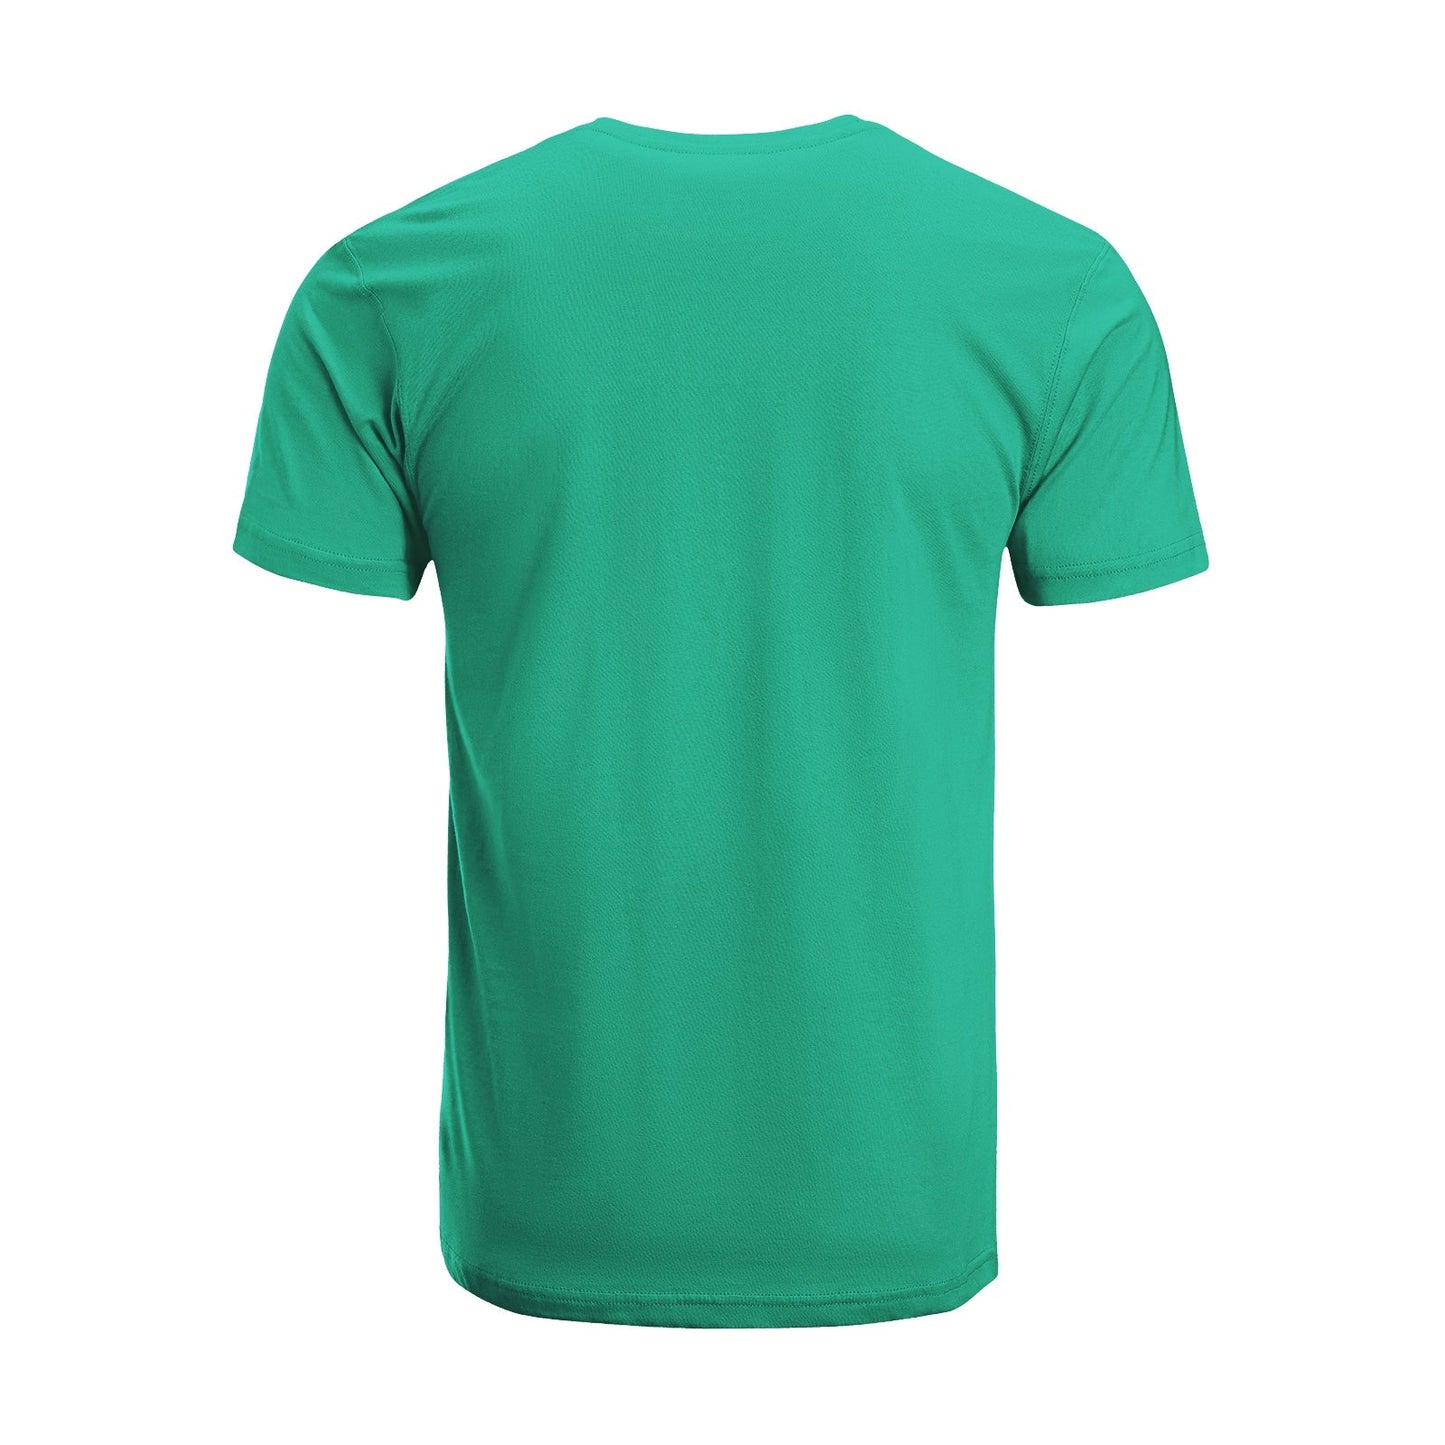 Unisex Short Sleeve Crew Neck Cotton Jersey T-Shirt TRUCK 15